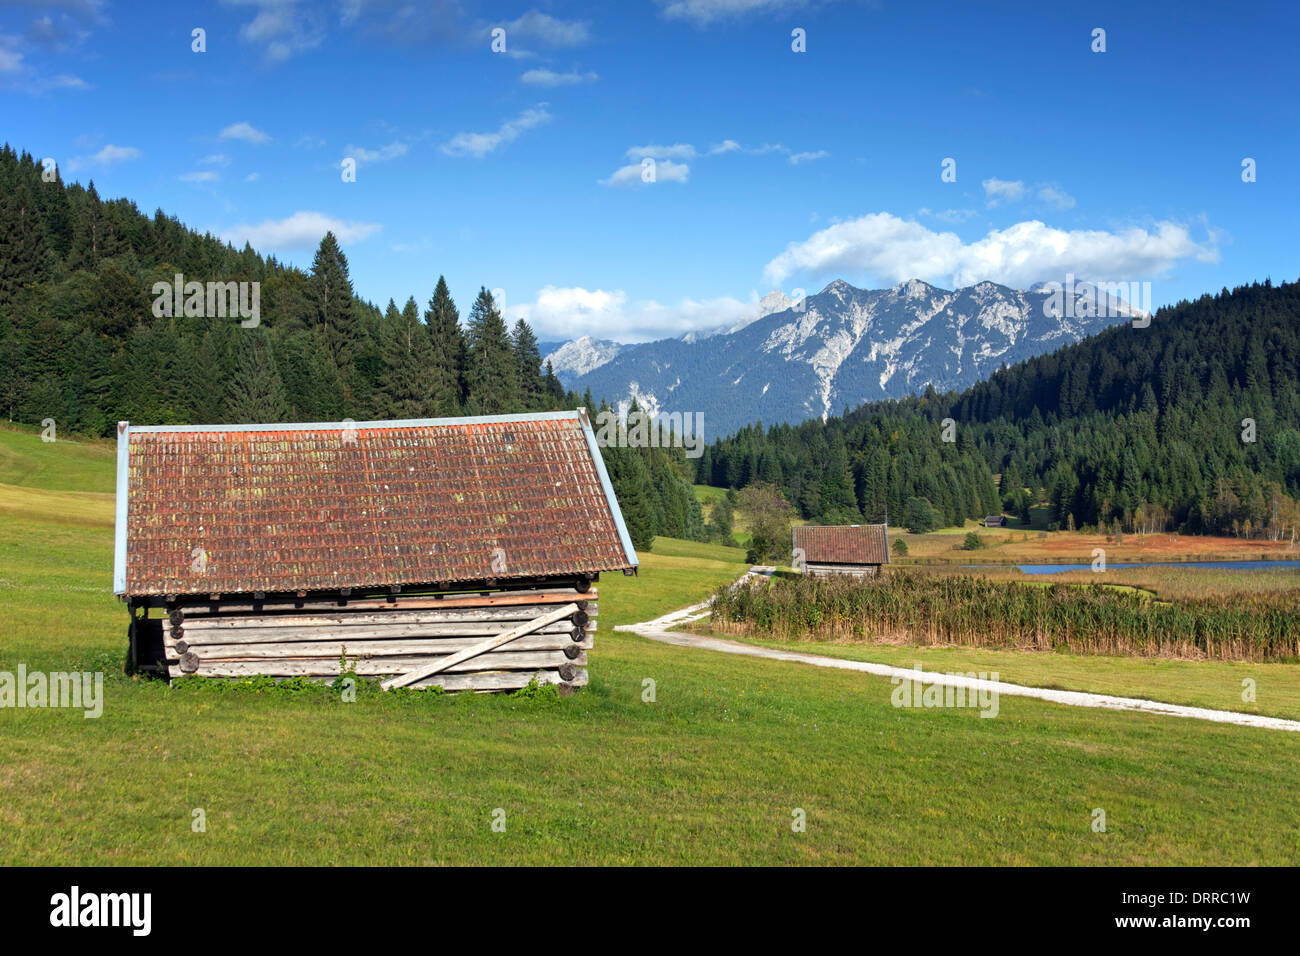 Cabane en bois le long du lac grenier / Gerold / Geroldsee près de Mittenwald, Haute-Bavière, Allemagne Banque D'Images